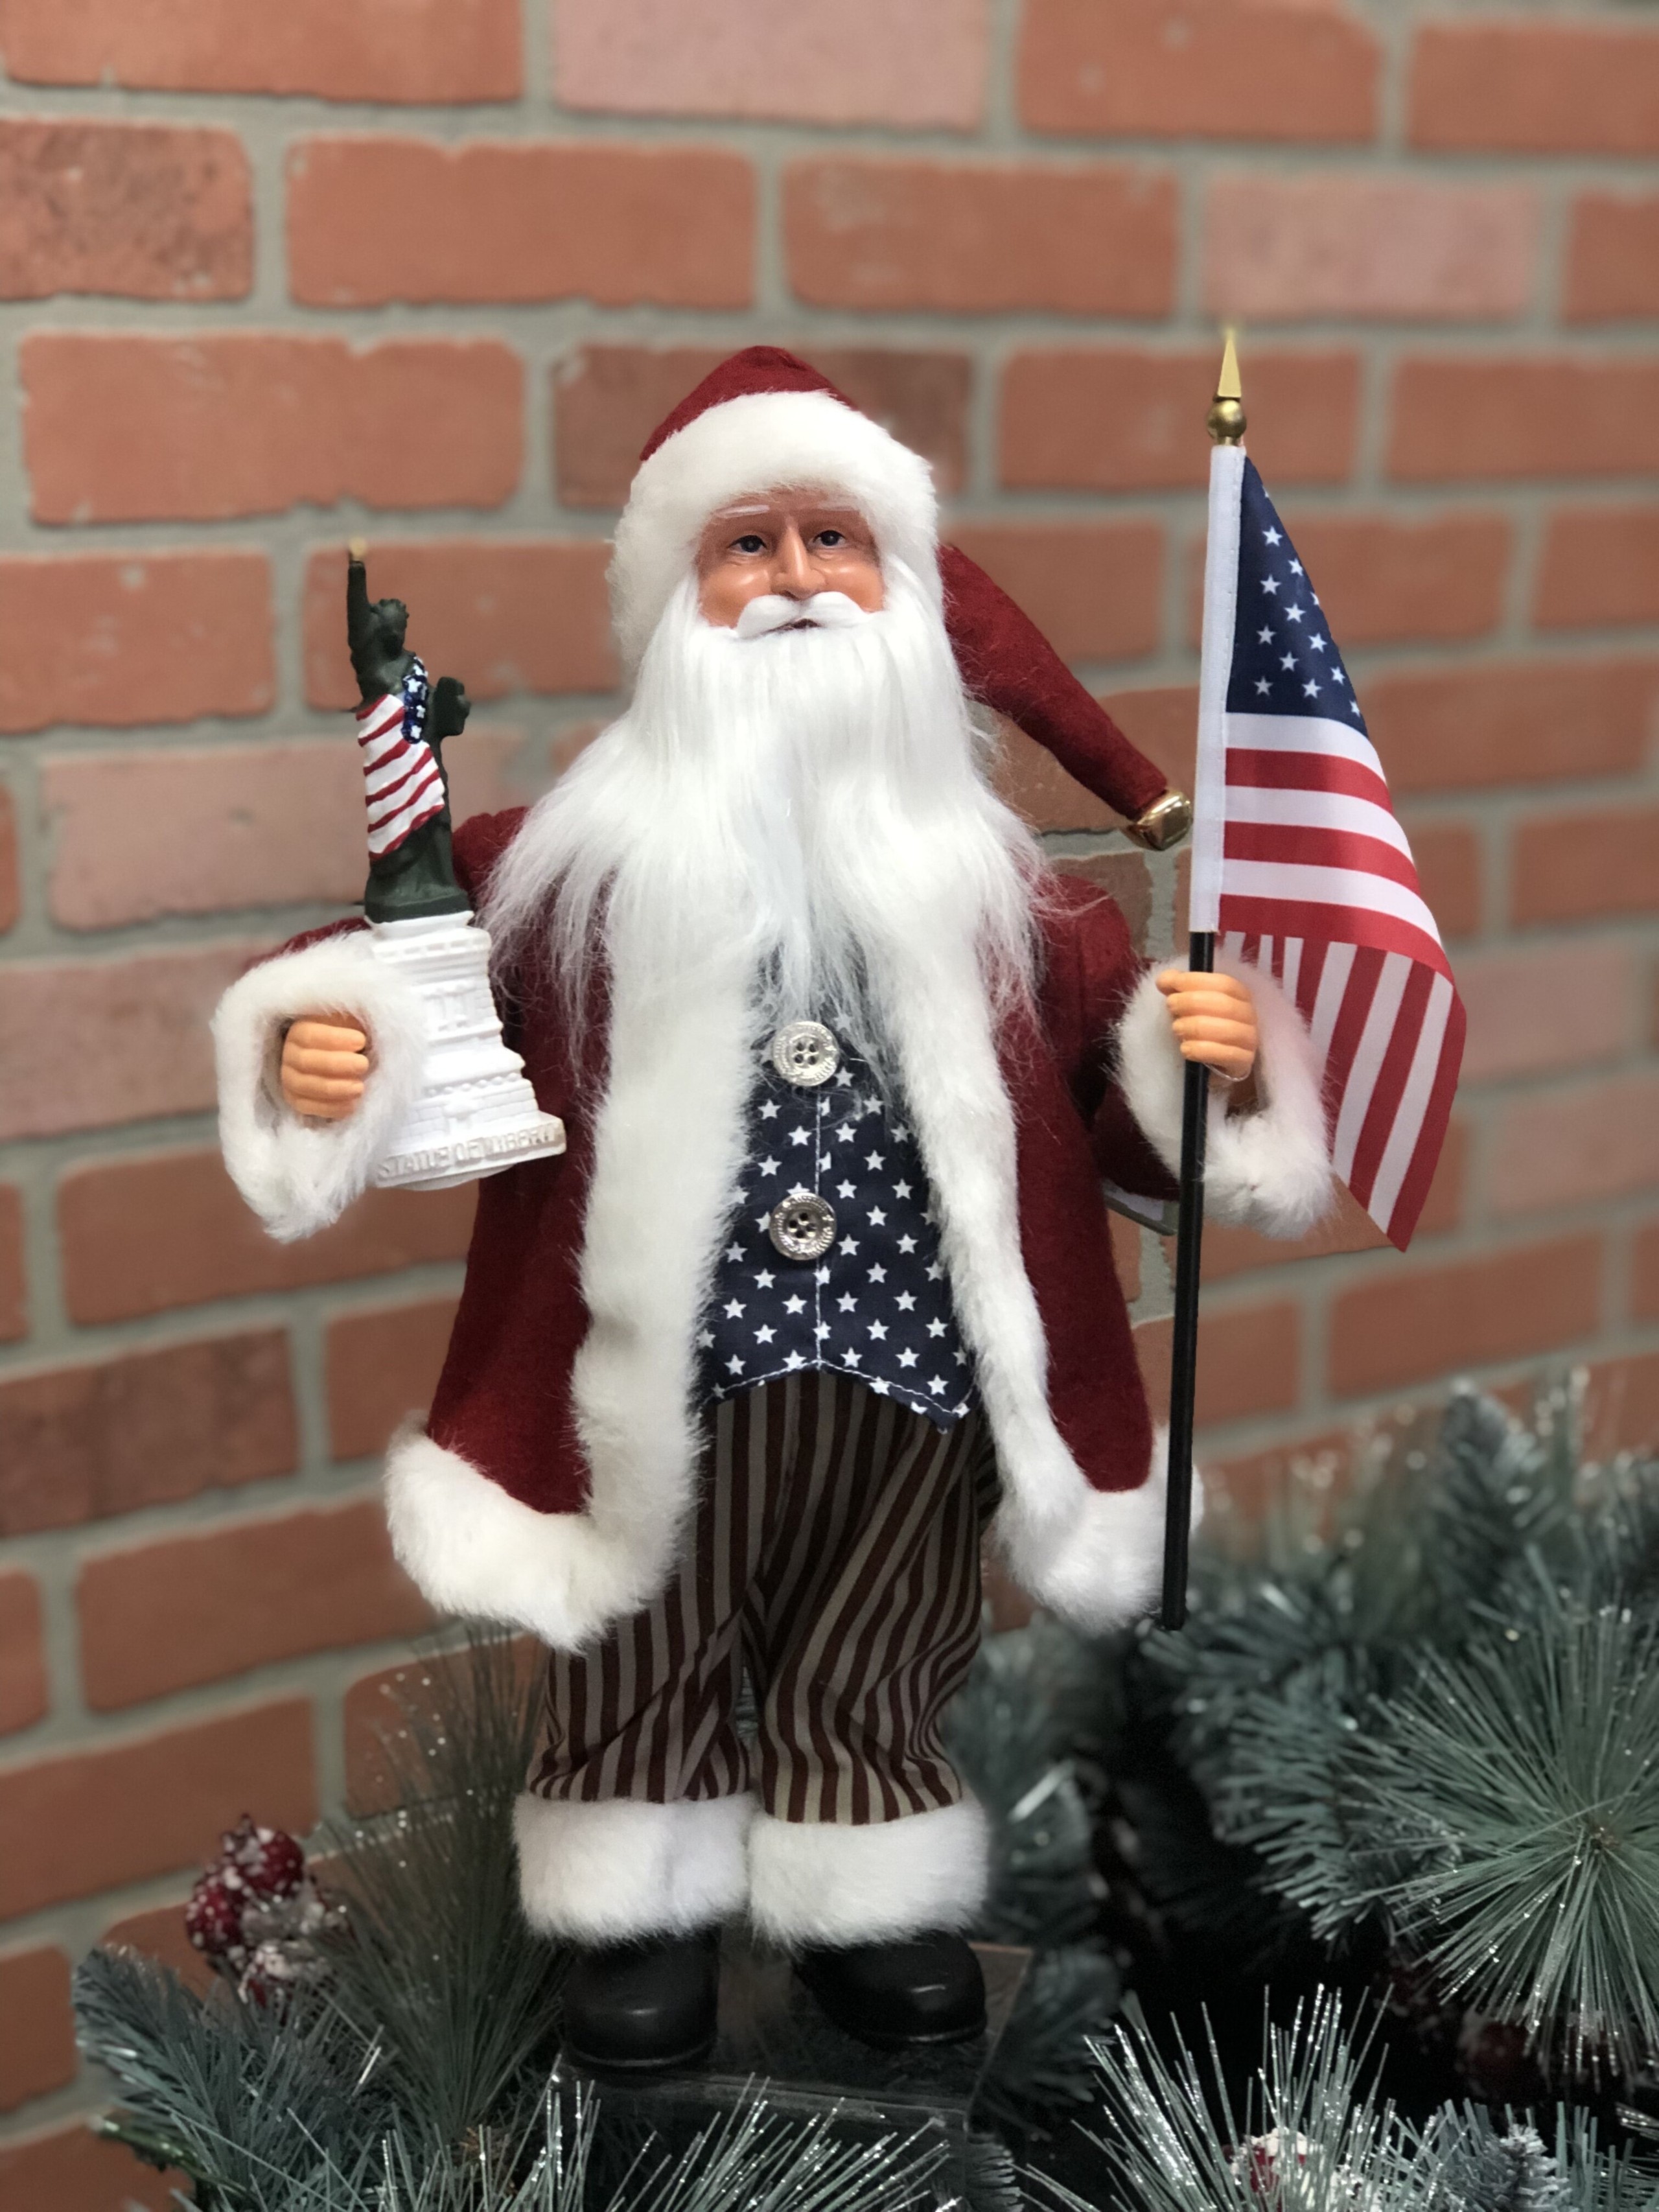 American Santa